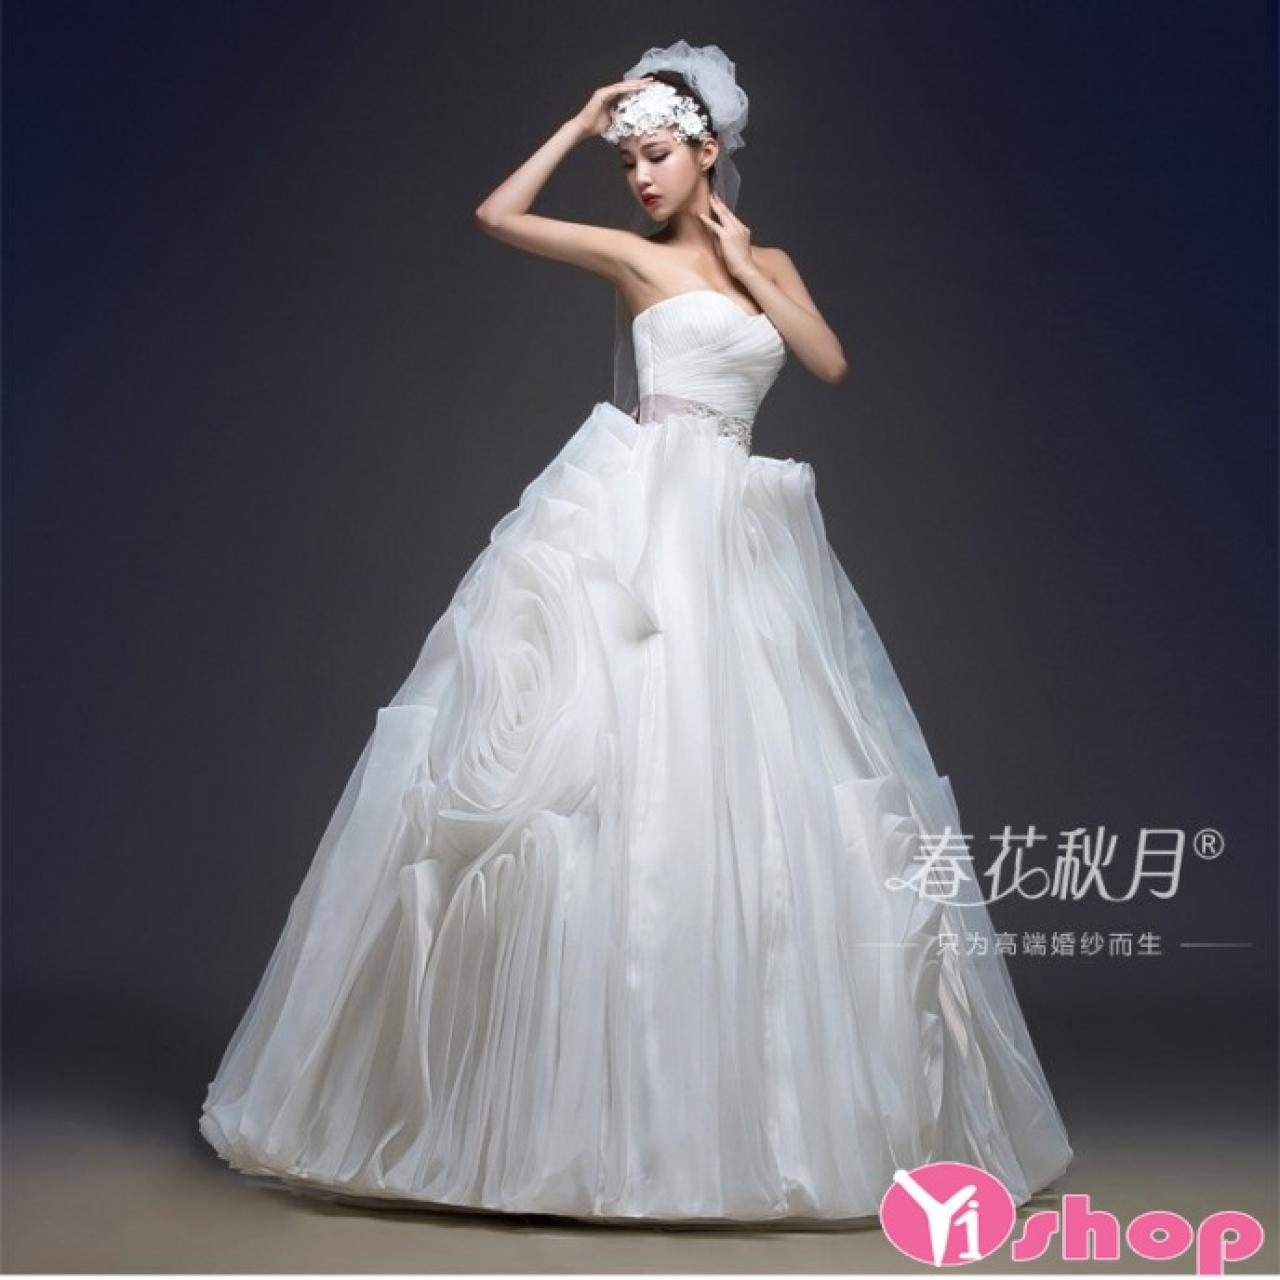 Váy đầm cưới công chúa đẹp bồng bềnh xu hướng HOT nhất hè 2021 - 2022